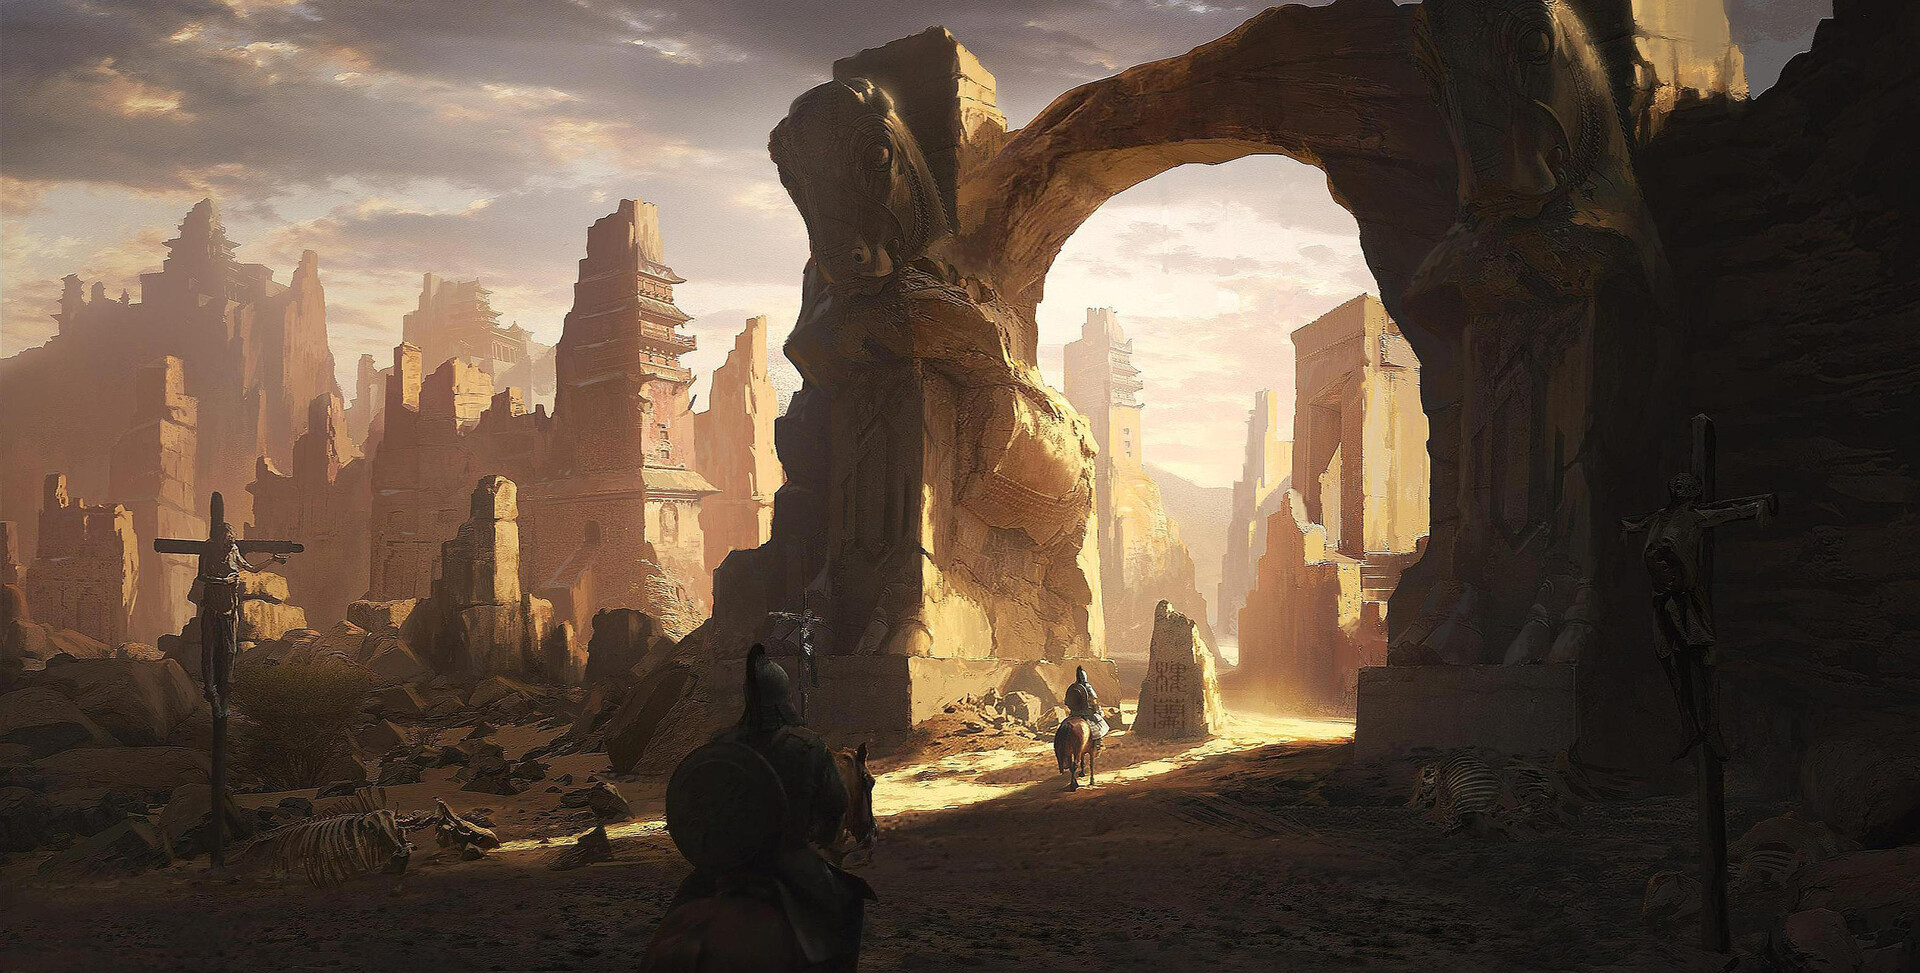 ArtStation - The ancient city of desert